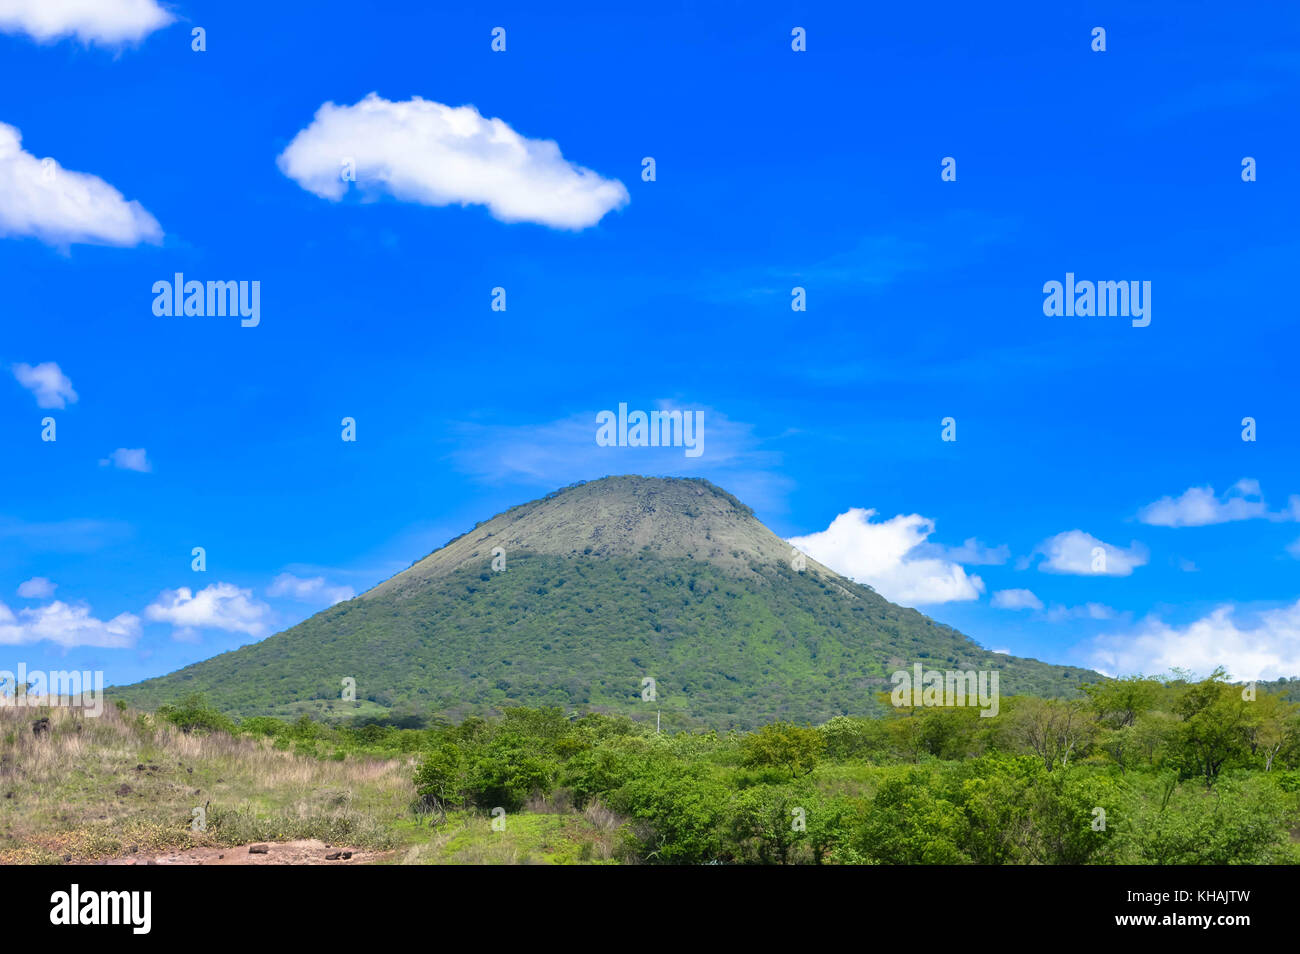 Landschaft mit einem der vulkanischen Gipfeln in San Jacinto, Leon, Nicaragua. Blauer Himmel Stockfoto